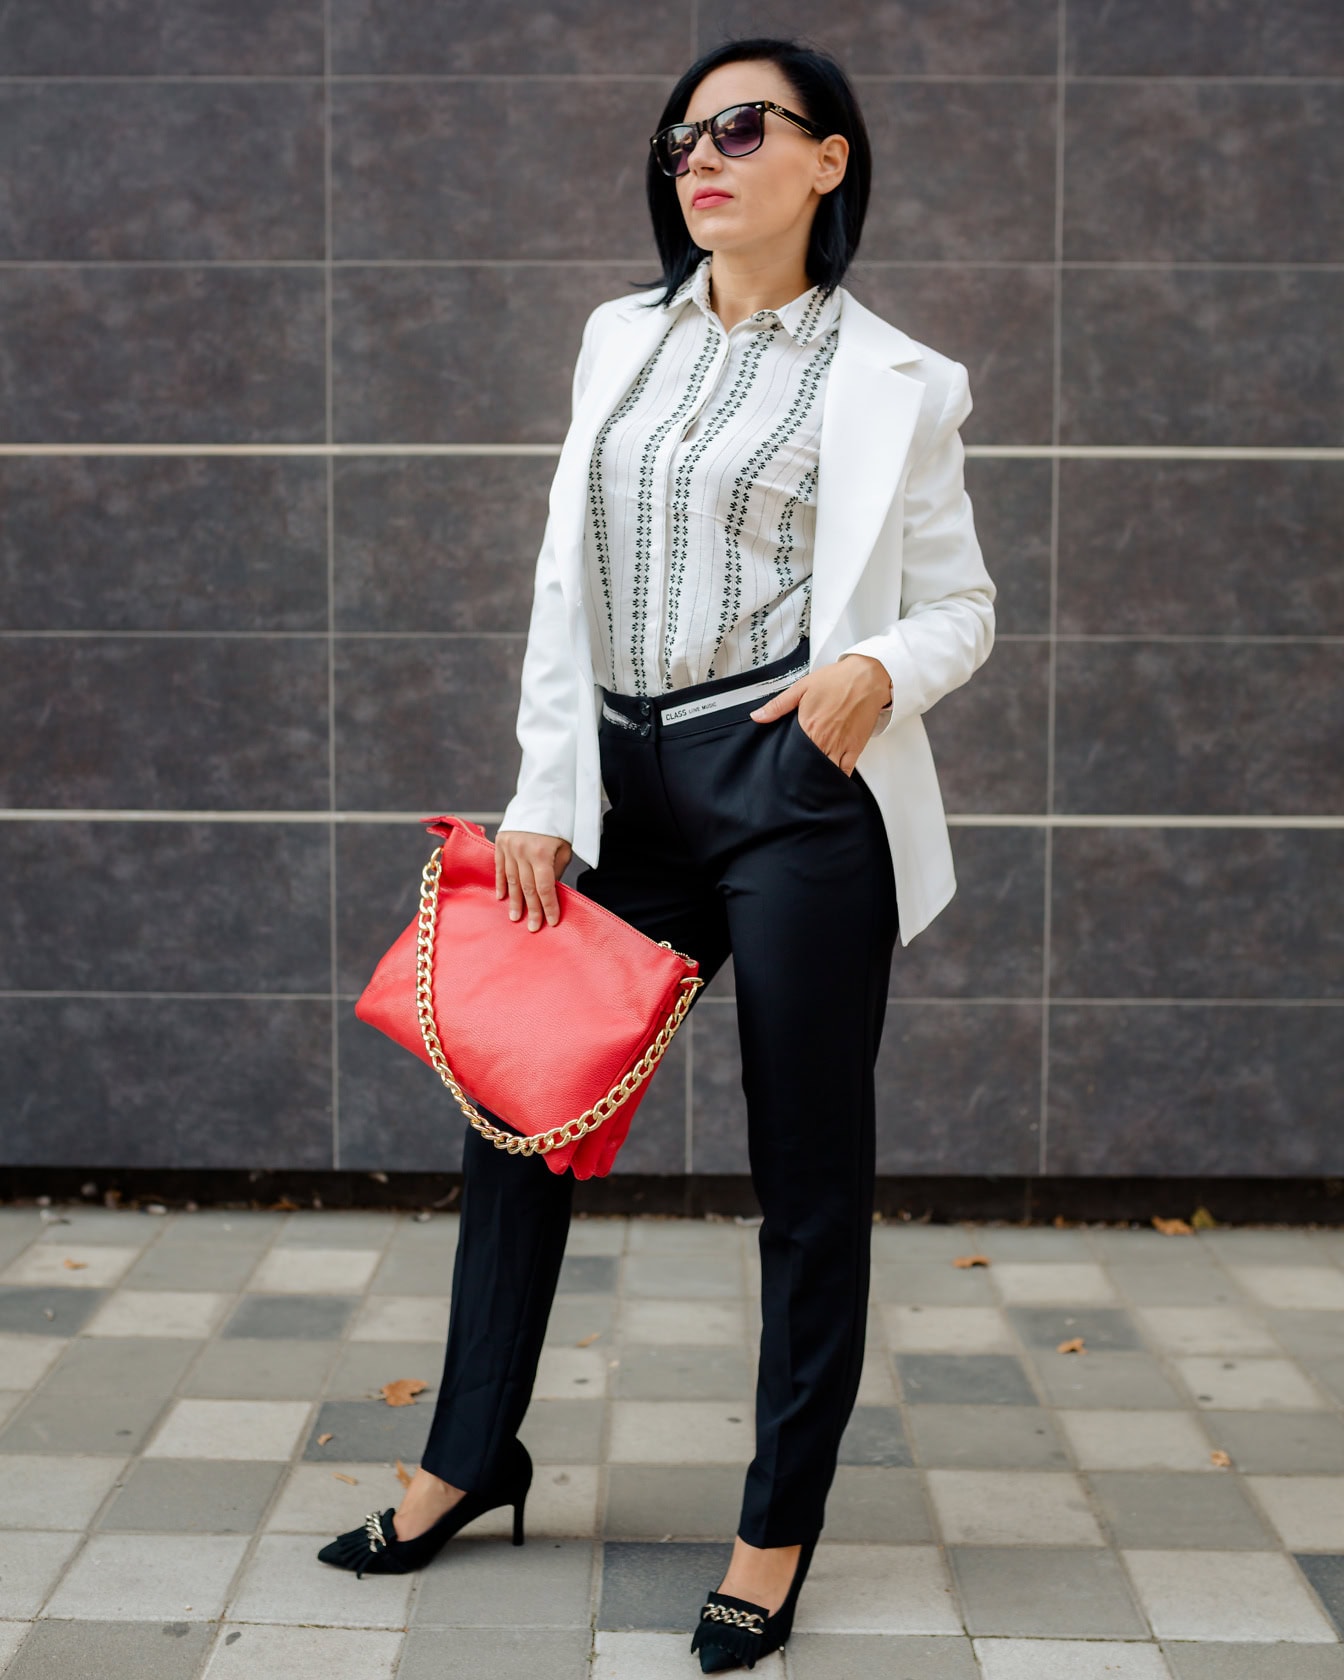 Hübsche Geschäftsfrau posiert in einem schwarz-weißen Anzug mit einer roten Handtasche mit goldenem Kettengriff